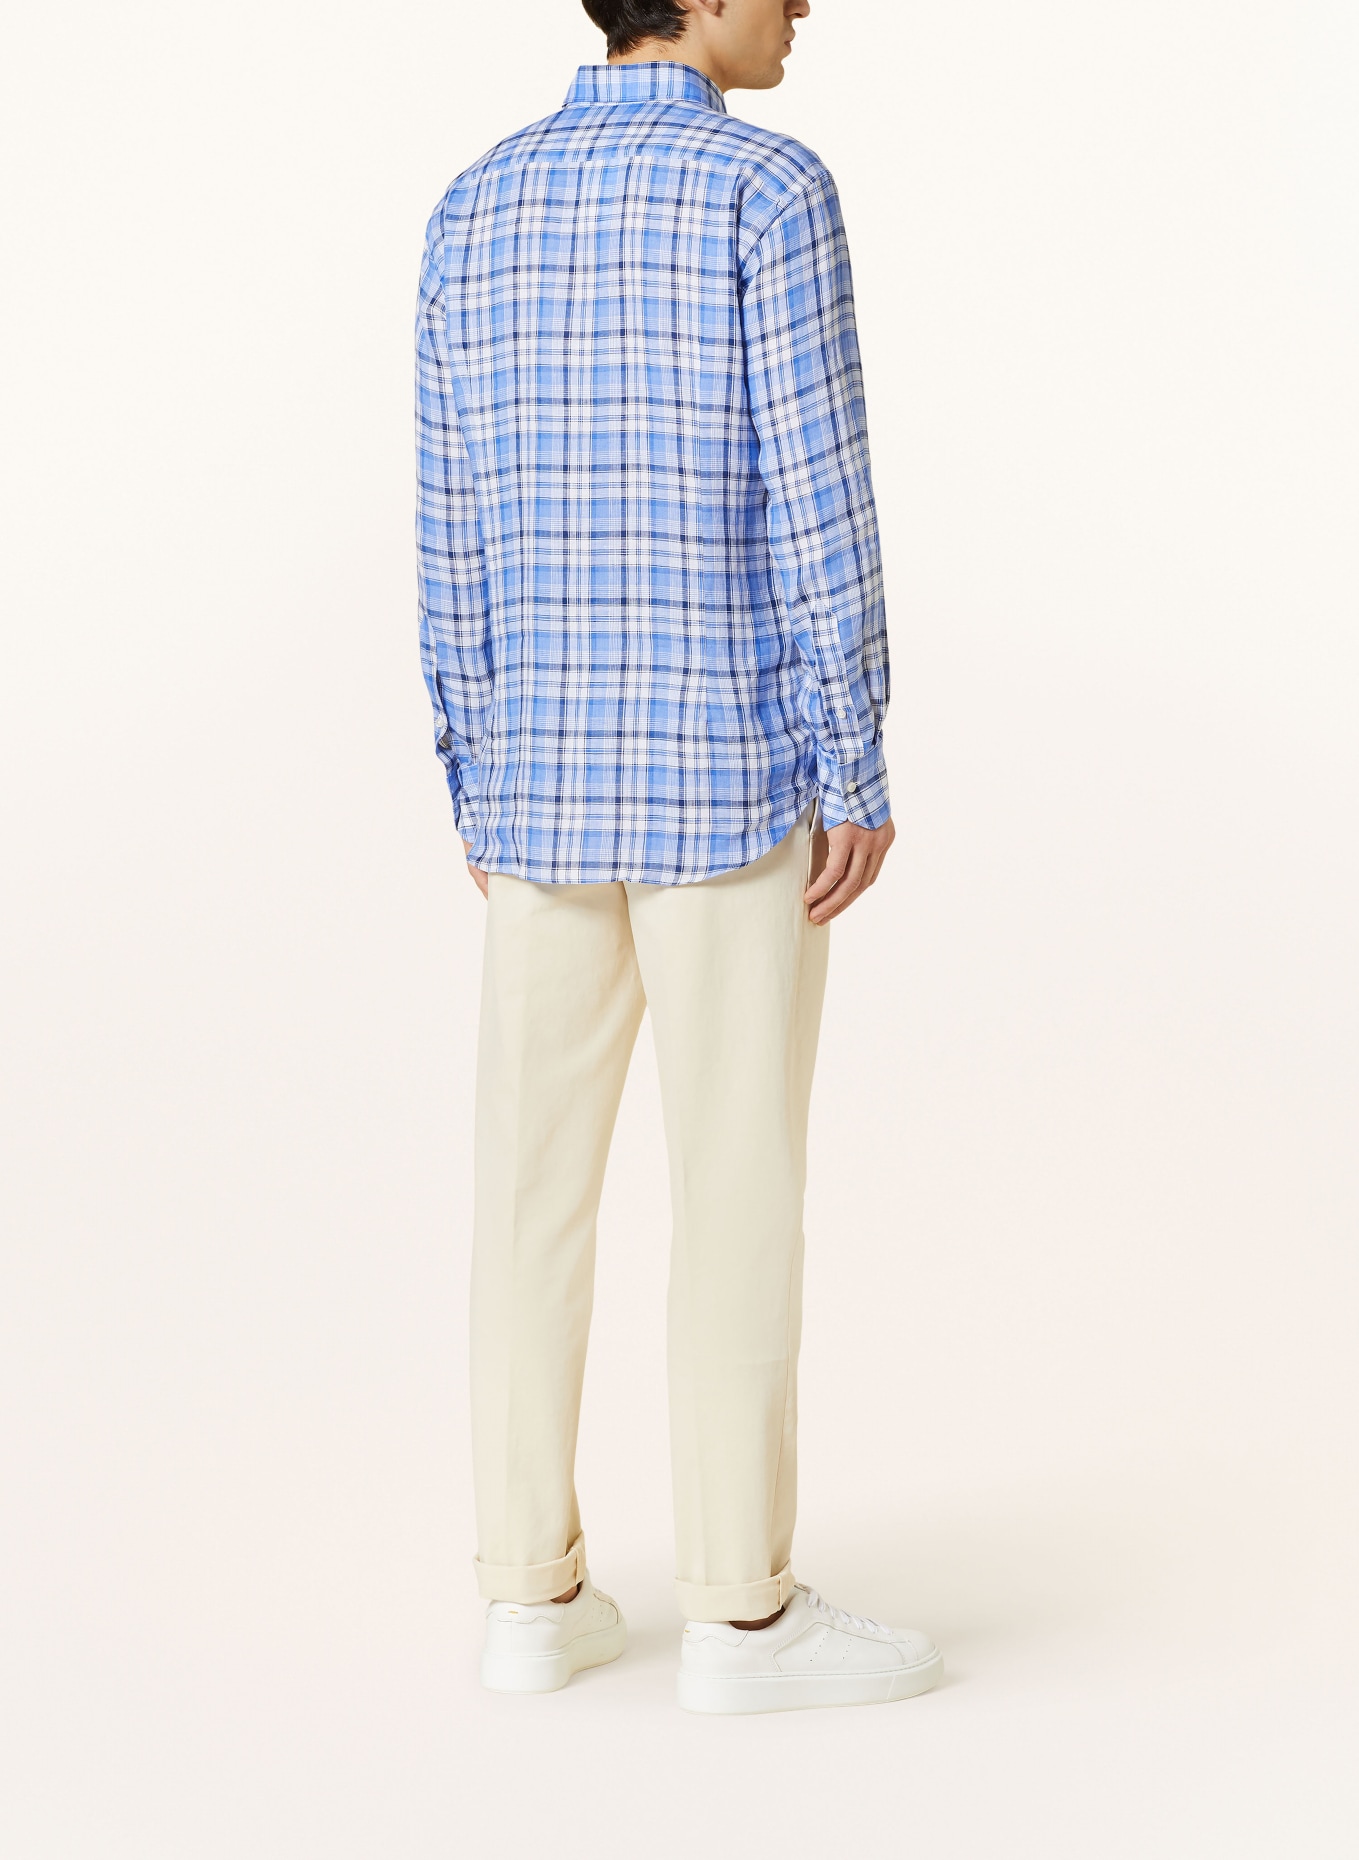 ARTIGIANO Linen shirt classic fit, Color: LIGHT BLUE/ DARK BLUE/ WHITE (Image 3)